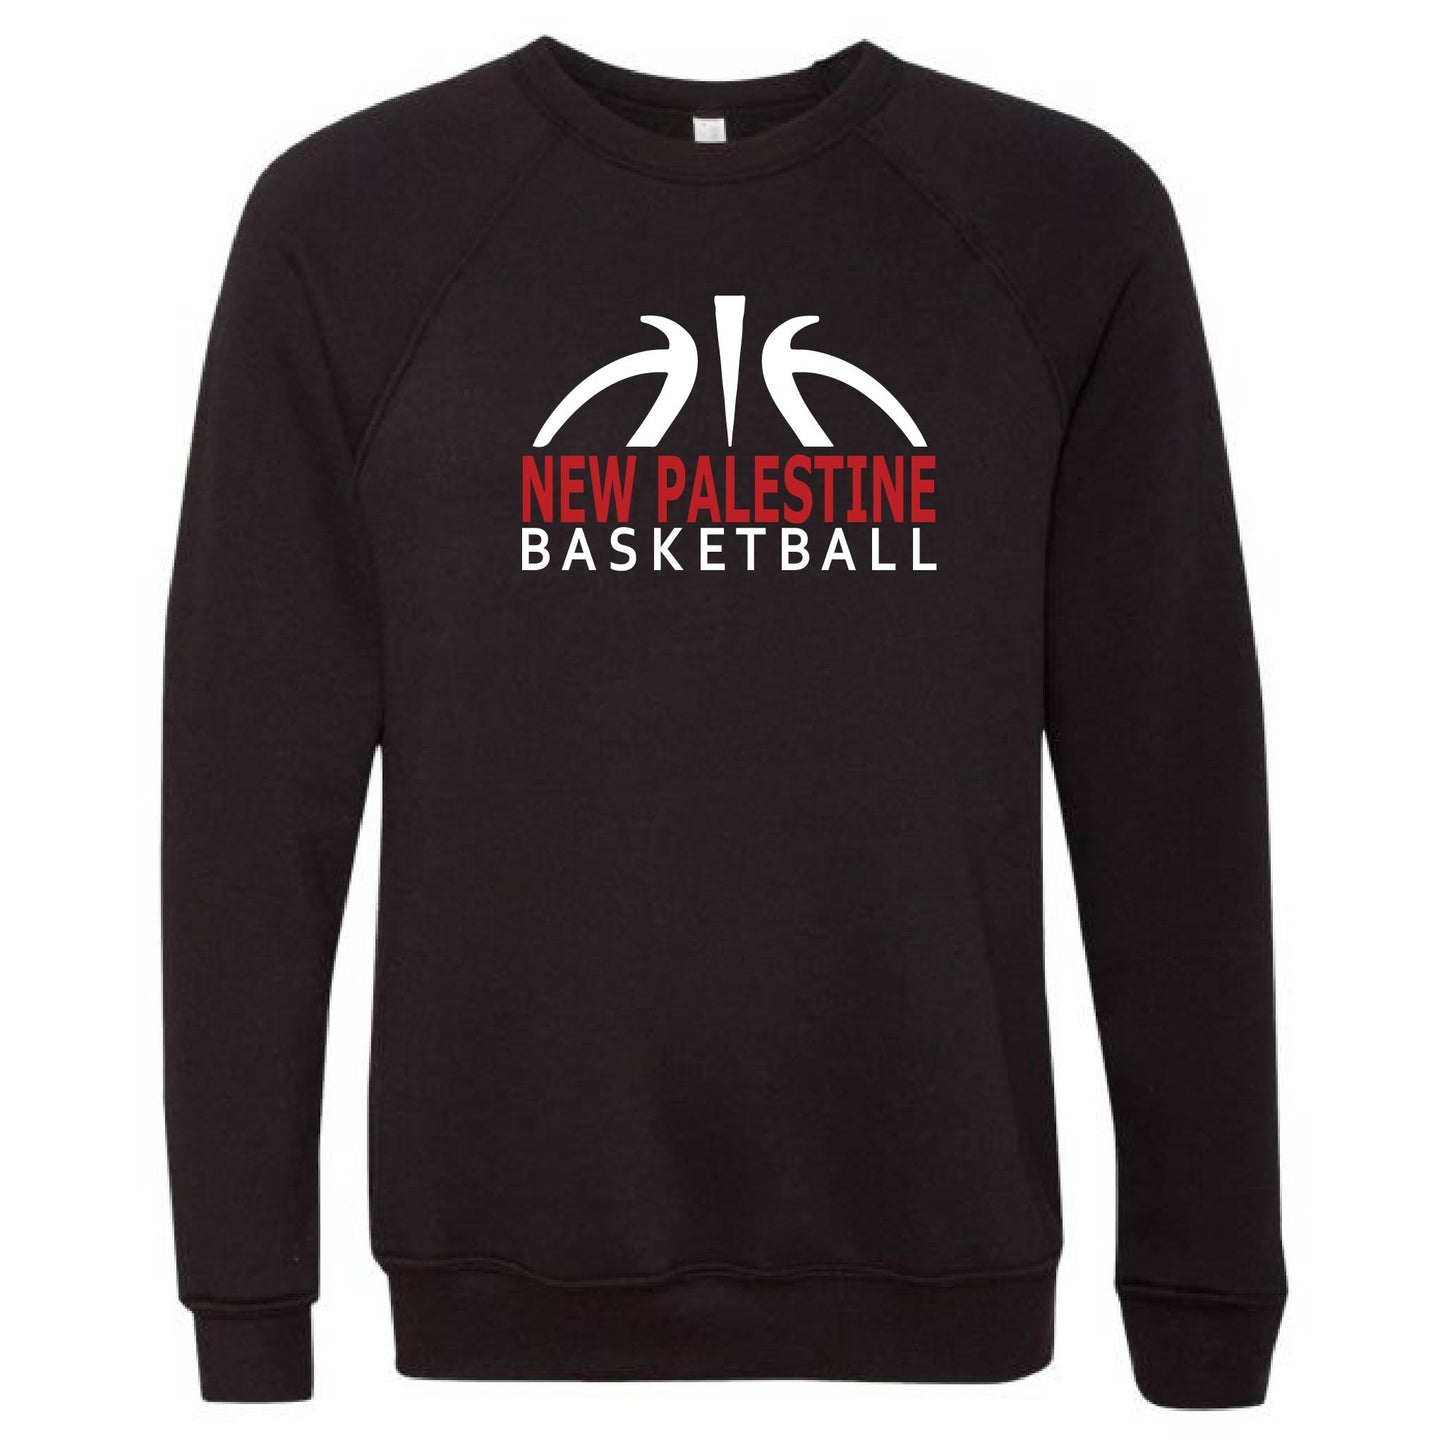 Unisex Sweatshirt - NP Basketball